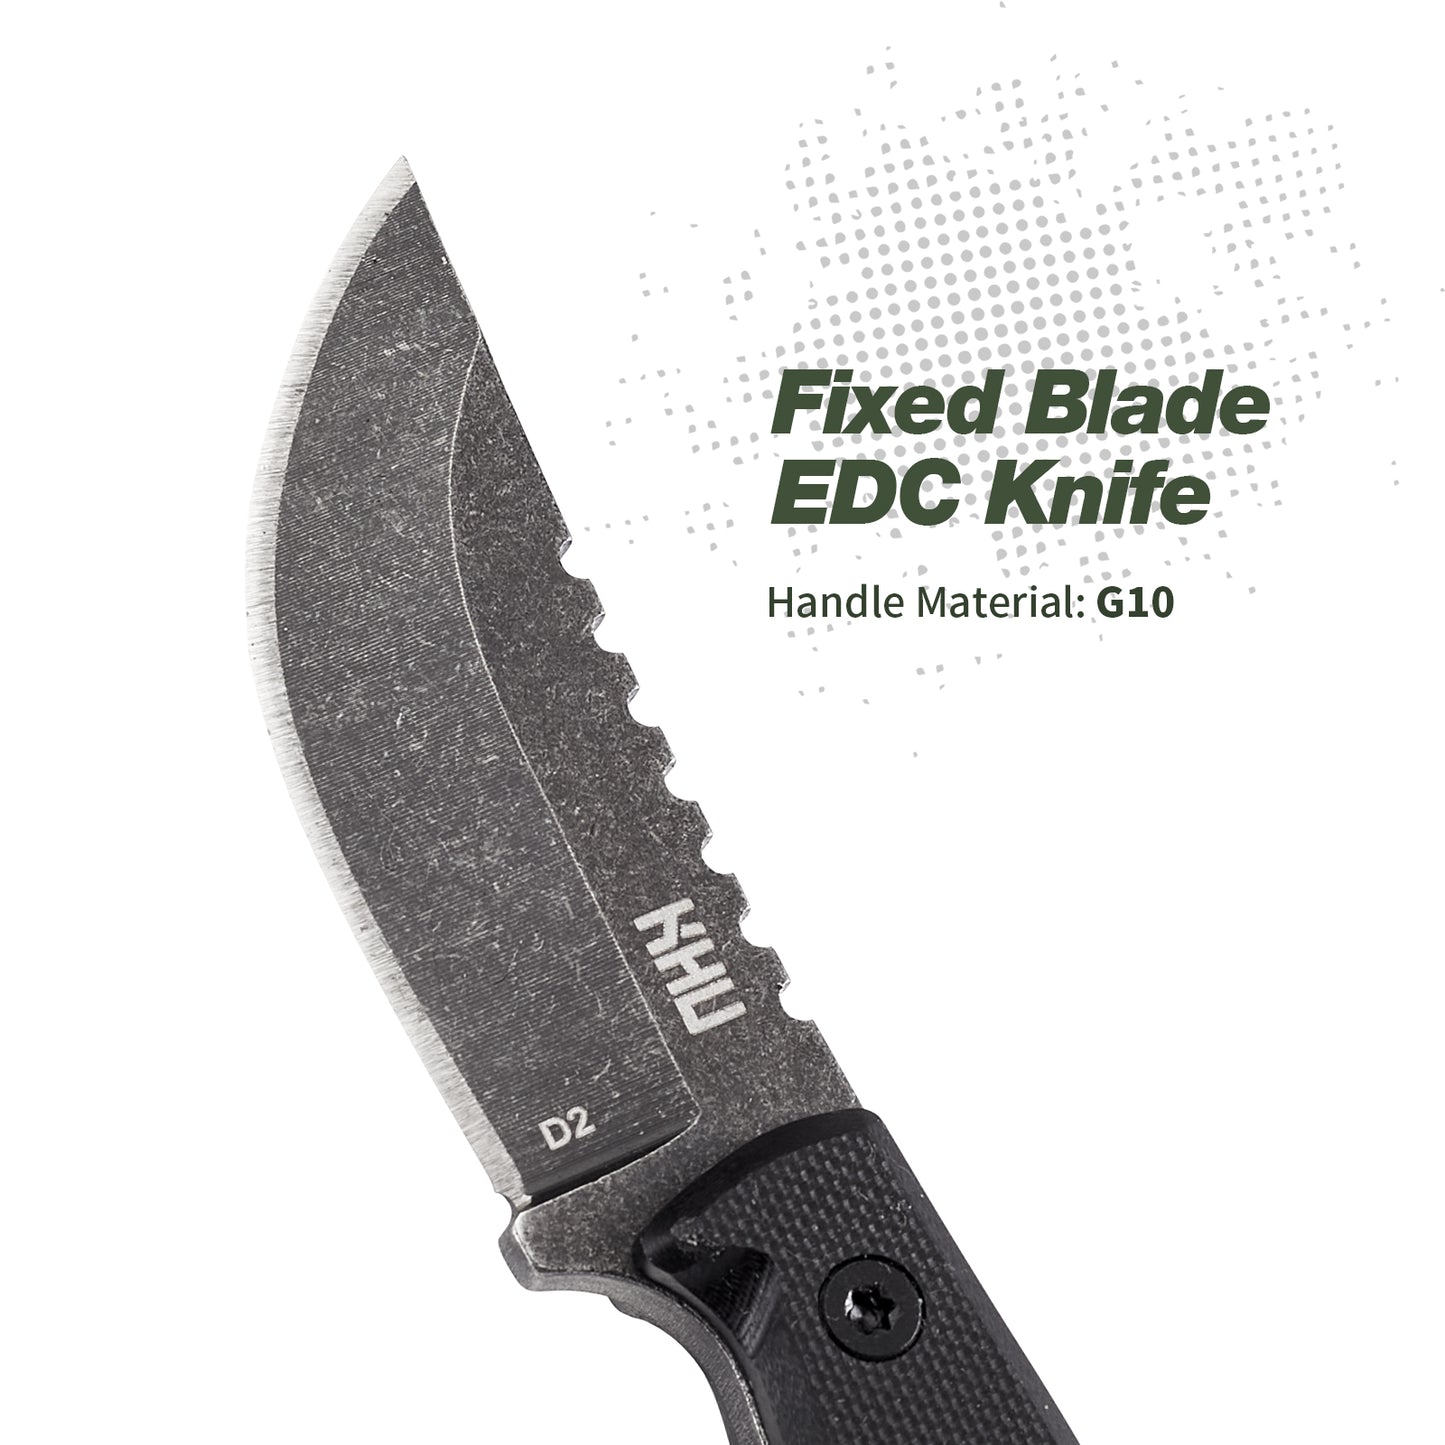 KHU Couteau de cou Couteau à lame fixe EDC Couteau mini Couteau de chasse Couteau de survie Couteau de Camping Couteau bushcraft - Acier D2 G10 poignée, Outdoor Chasse Camping Accessoires - Avec étui Kydex -10A